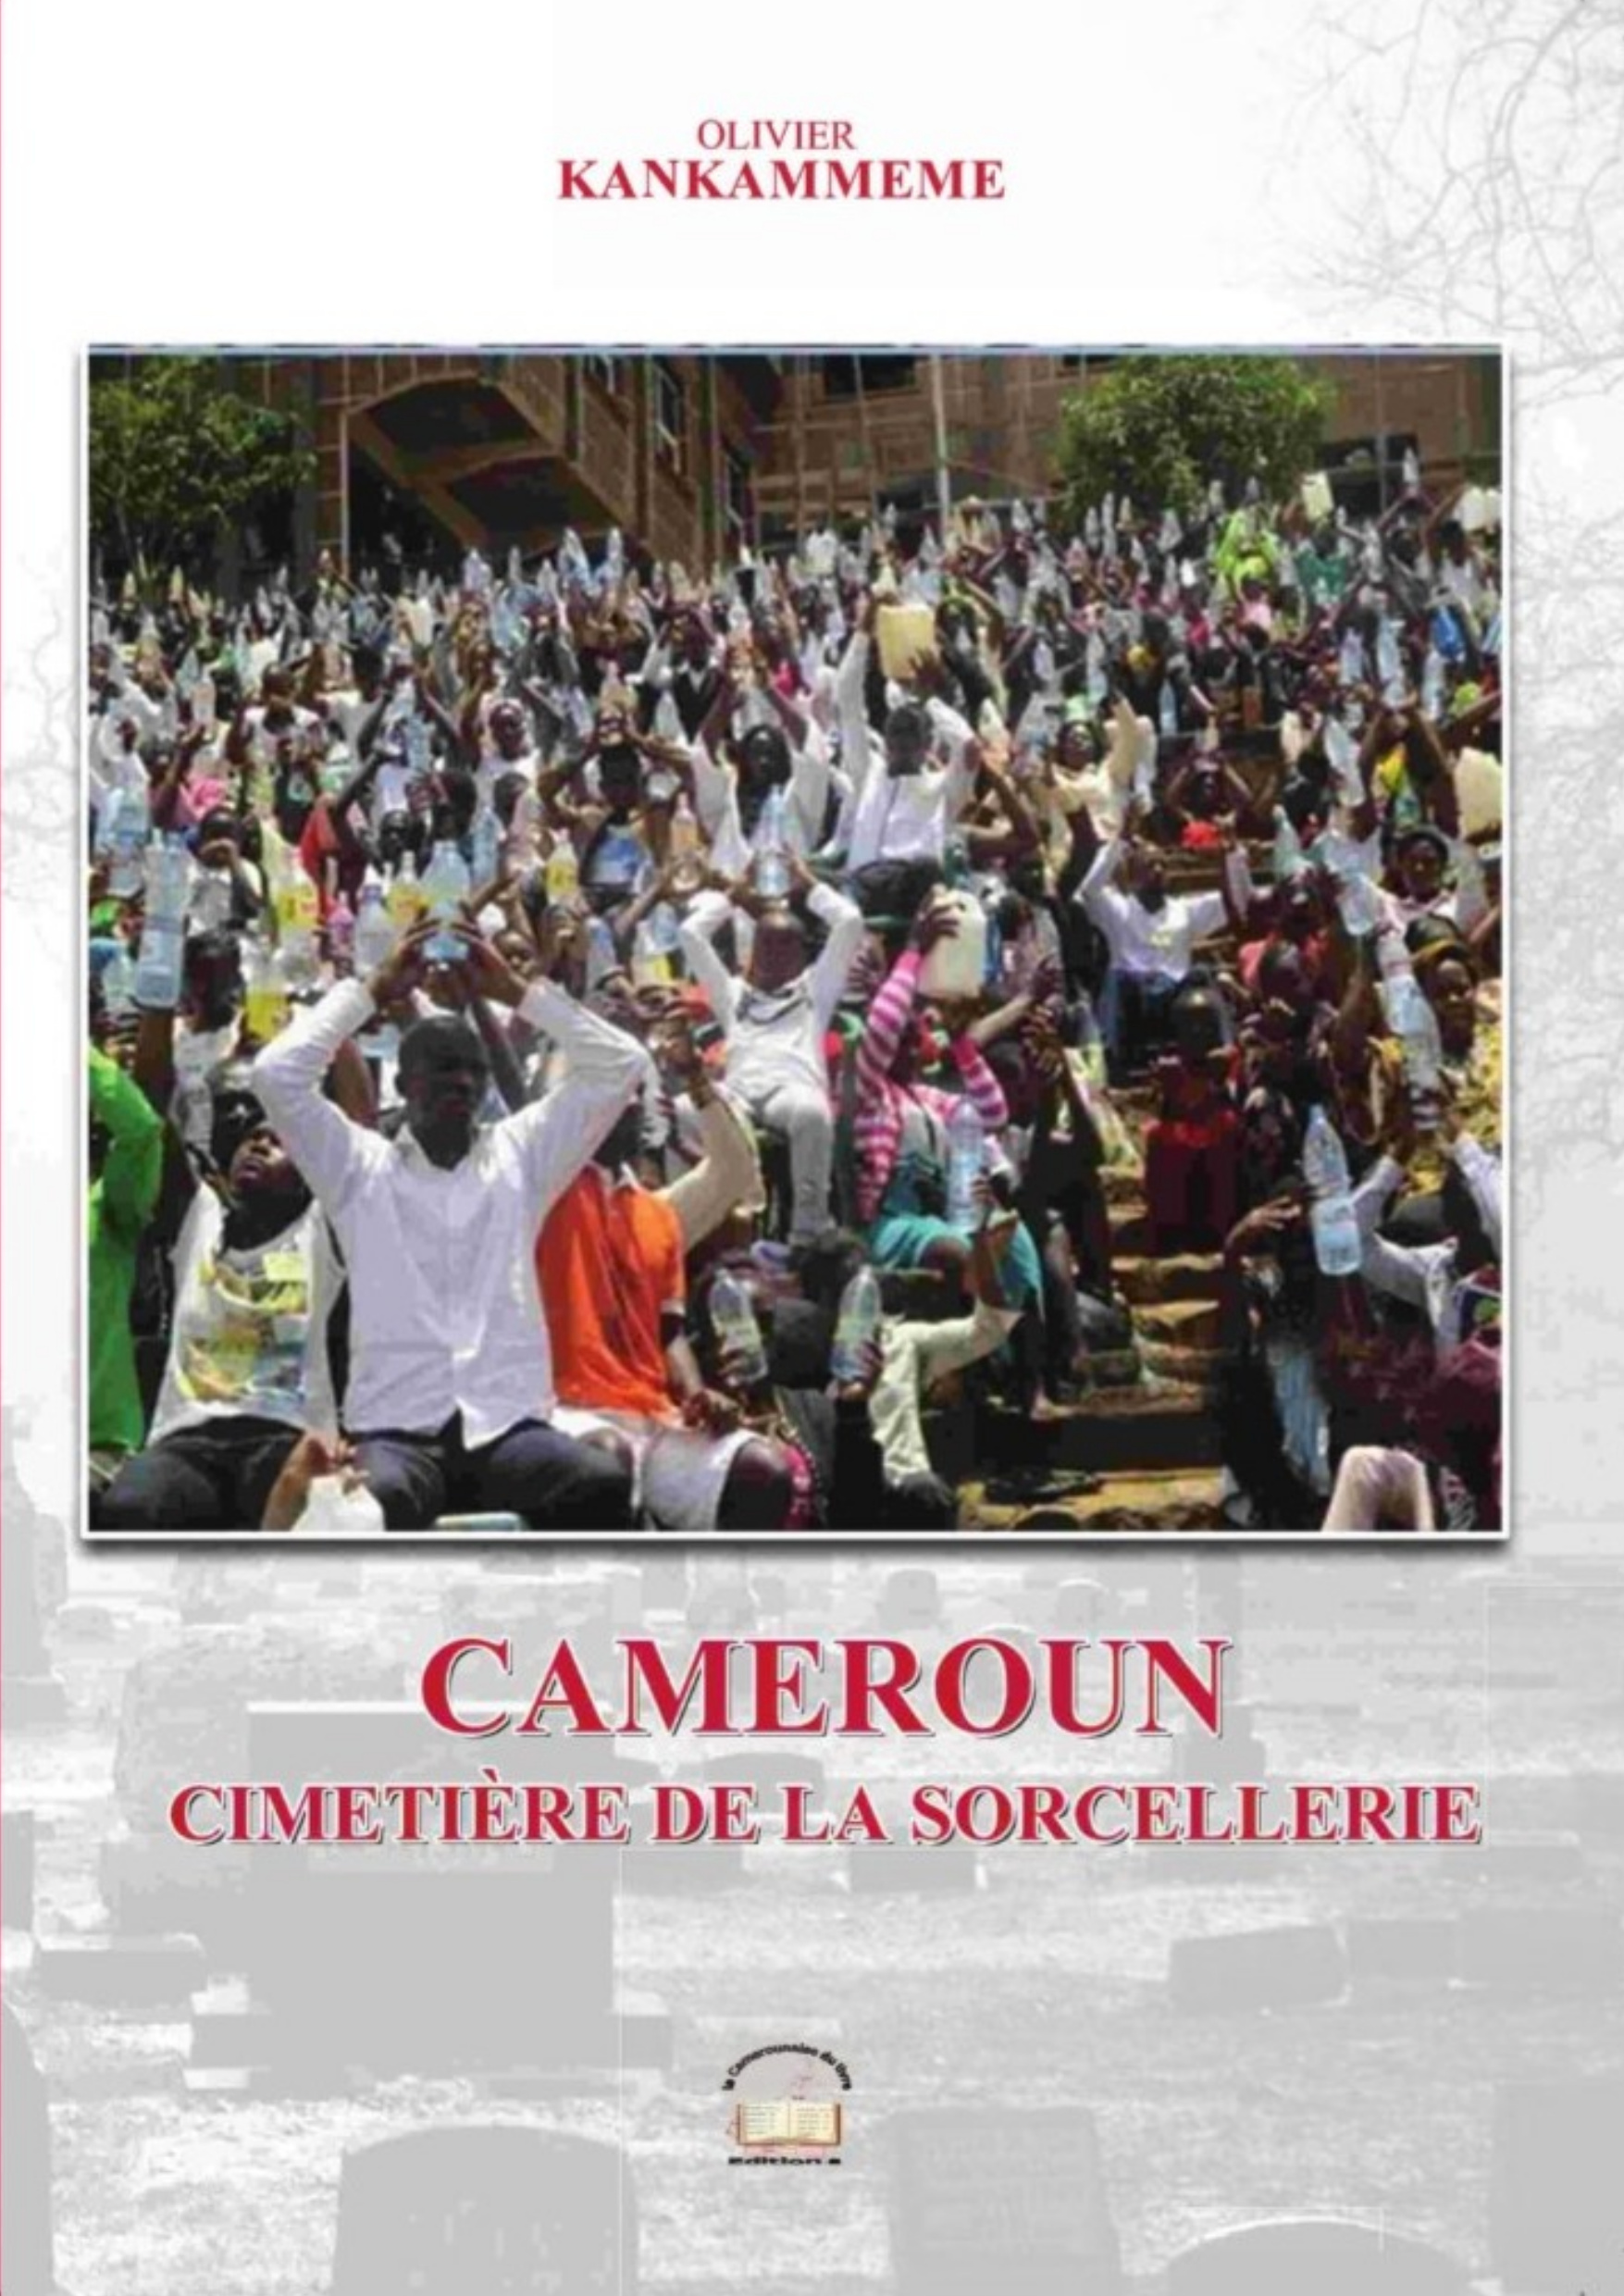 Cameroun cimétière de la sorcellerie - Olivier Kankam meme